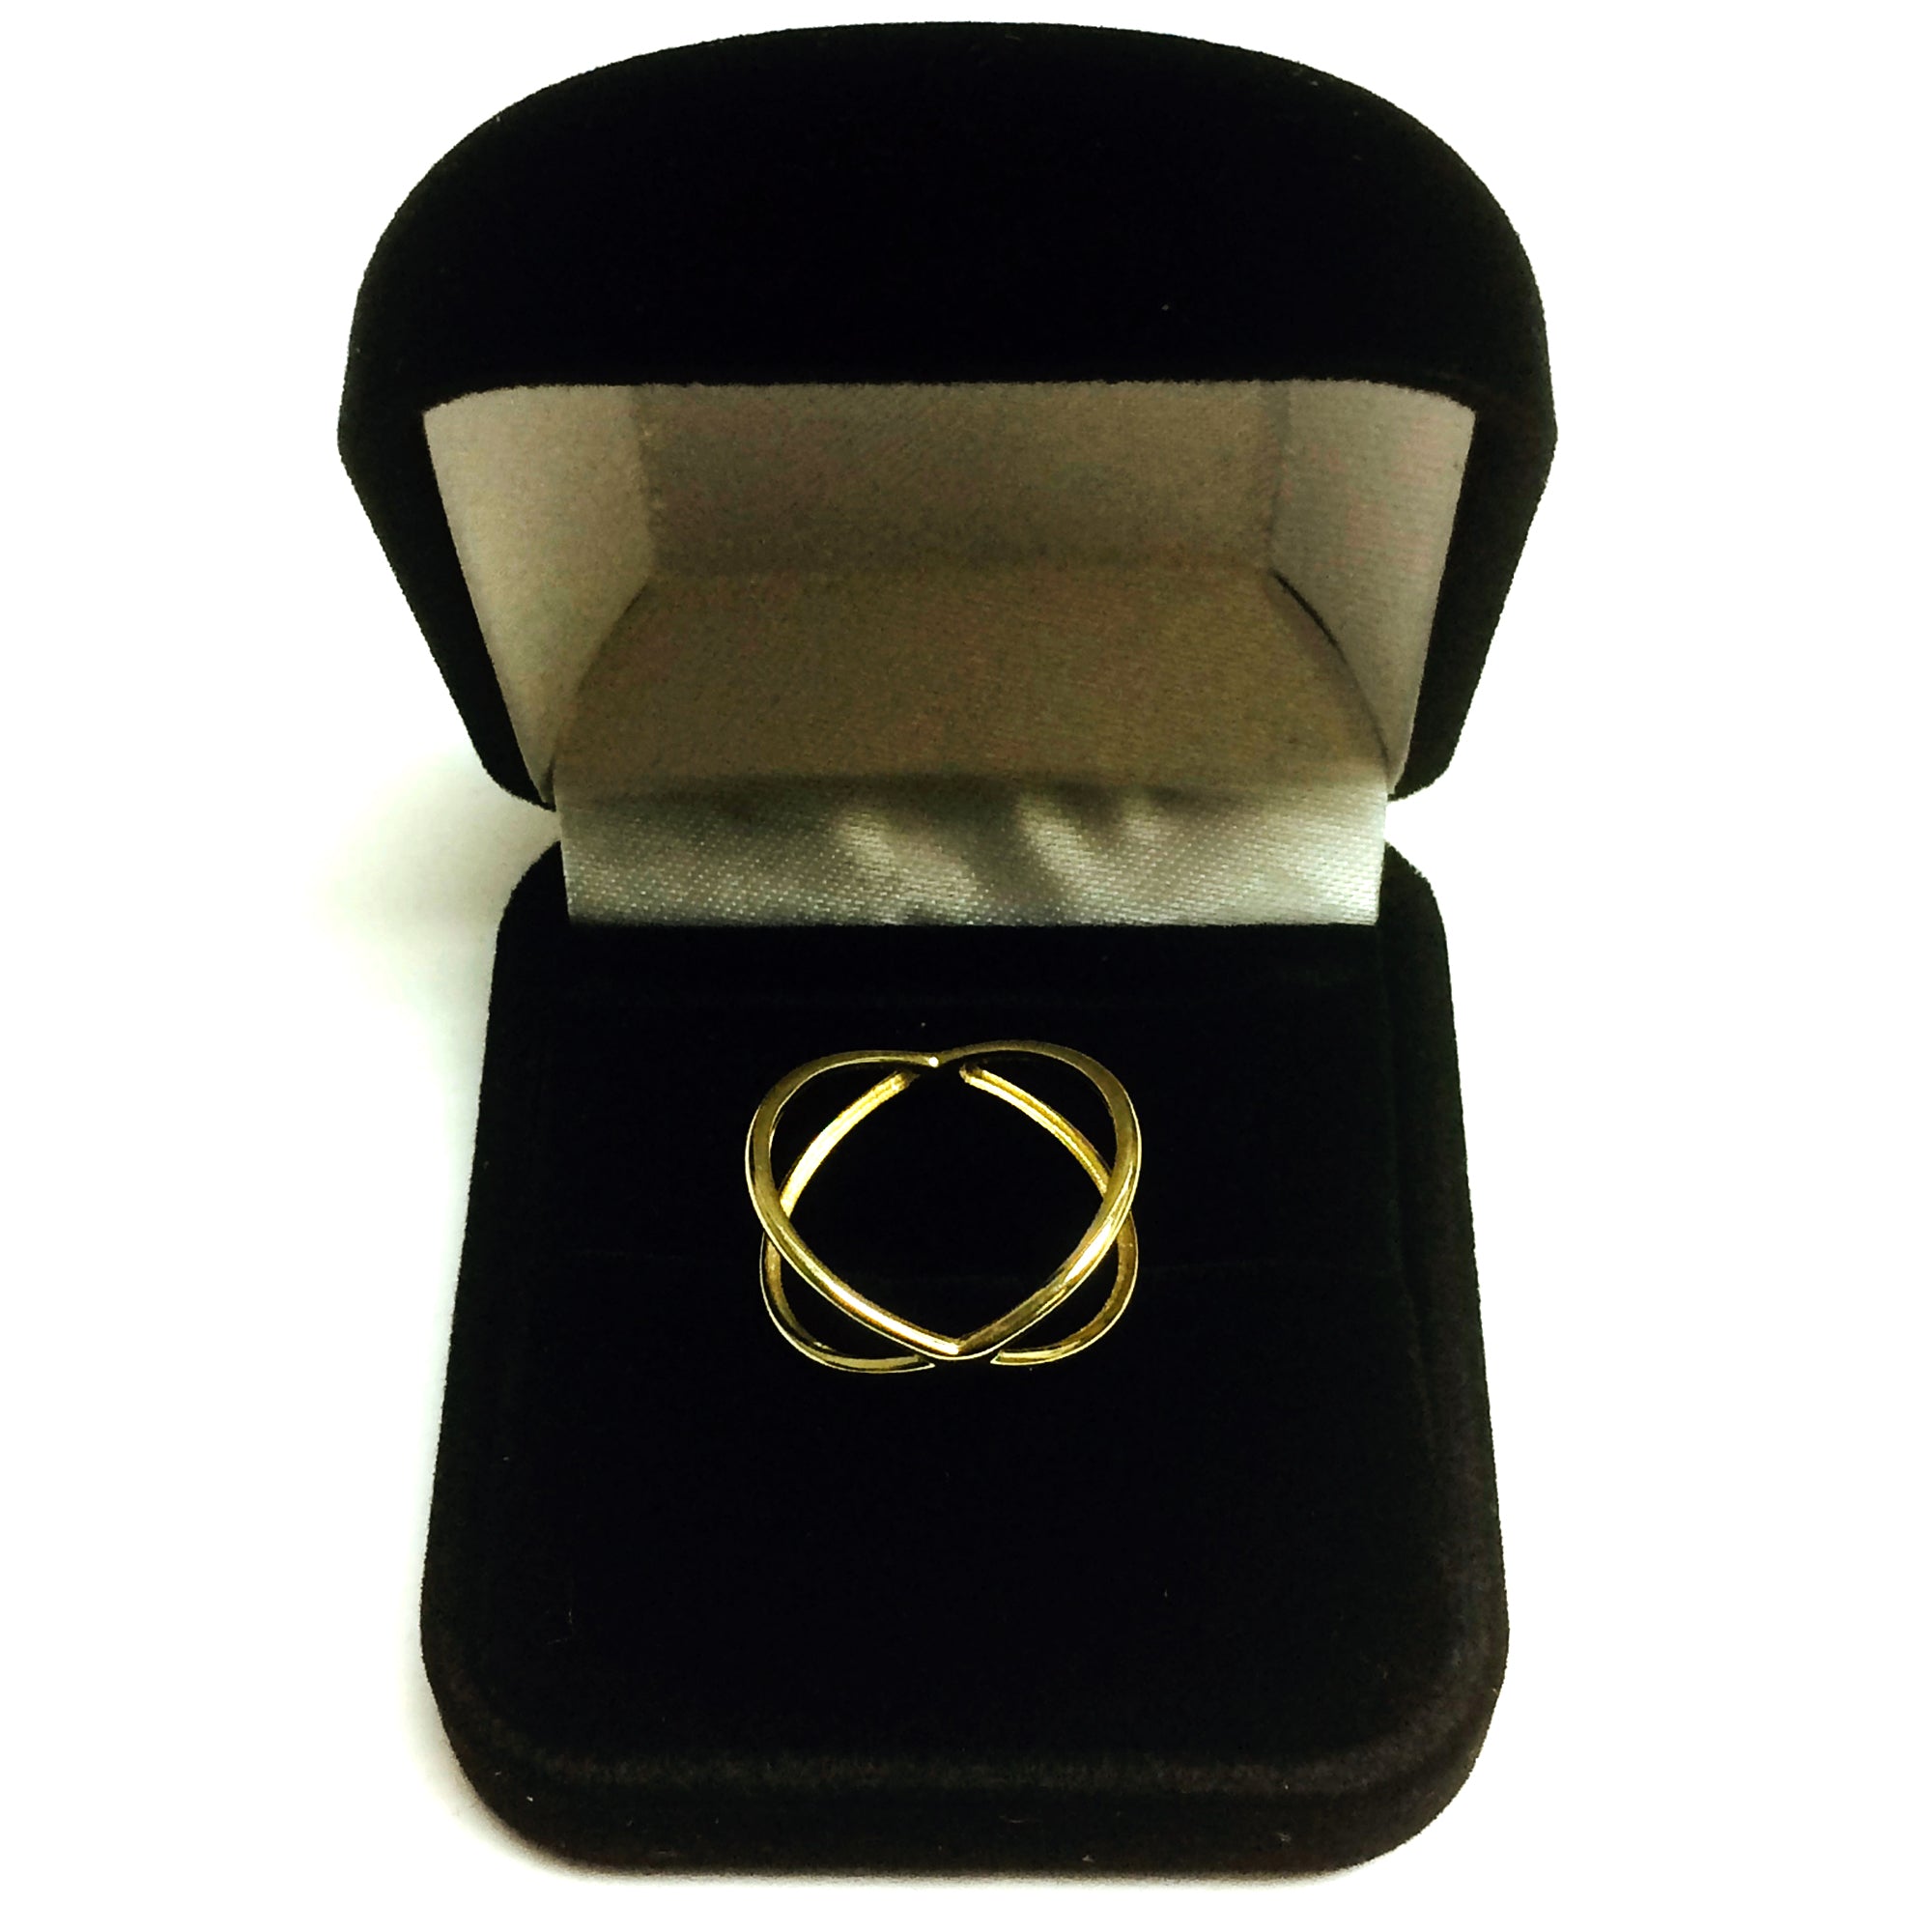 Anello con design a croce in oro giallo 14 carati, gioielli di design per uomini e donne